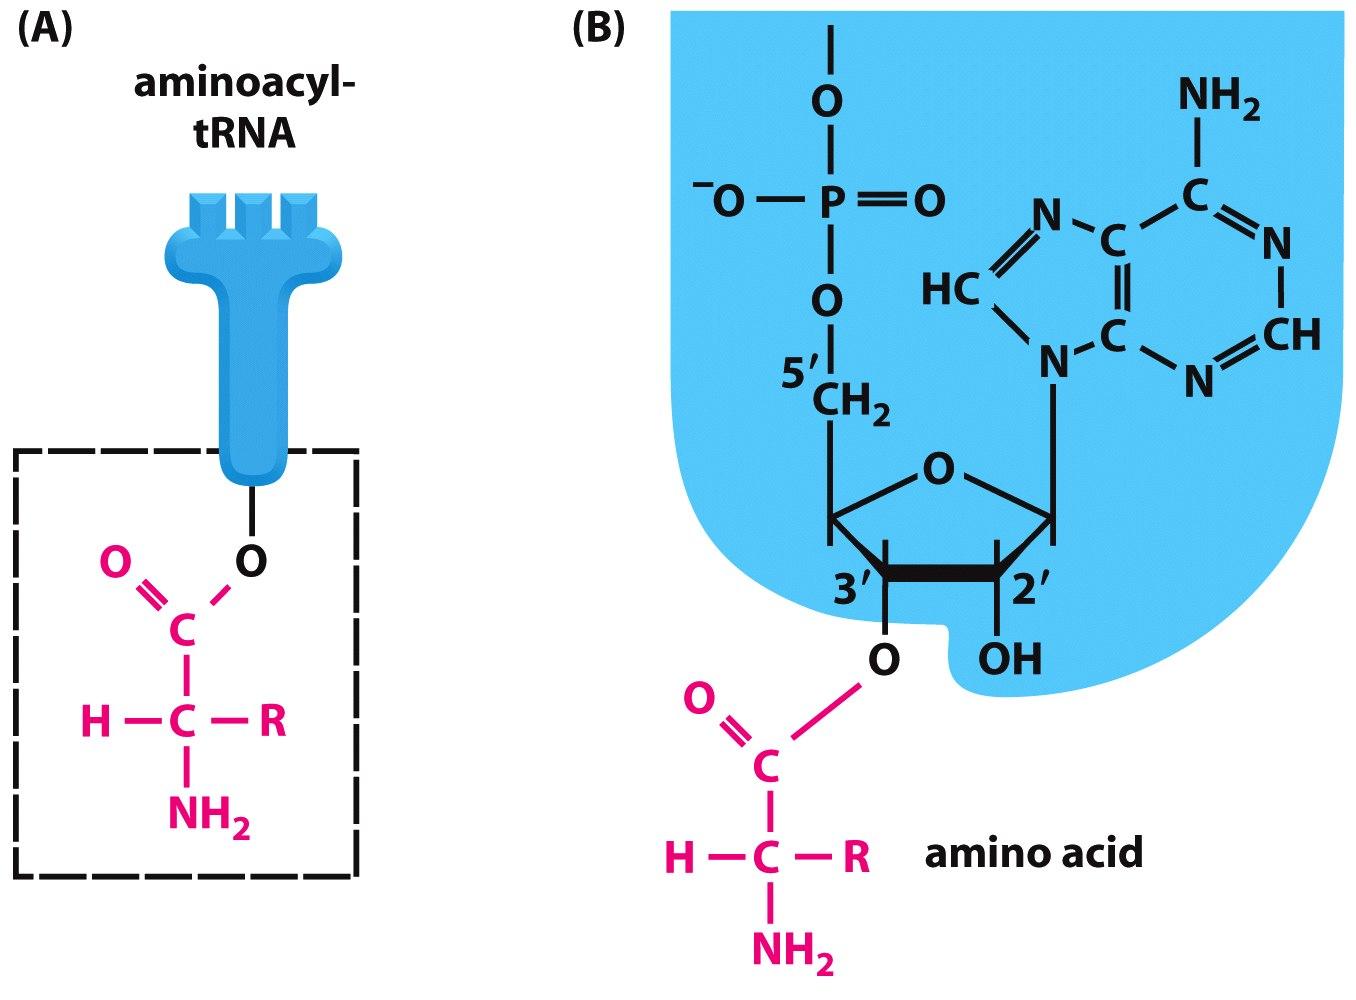 Cómo está cargado el aminoácido en el trna?